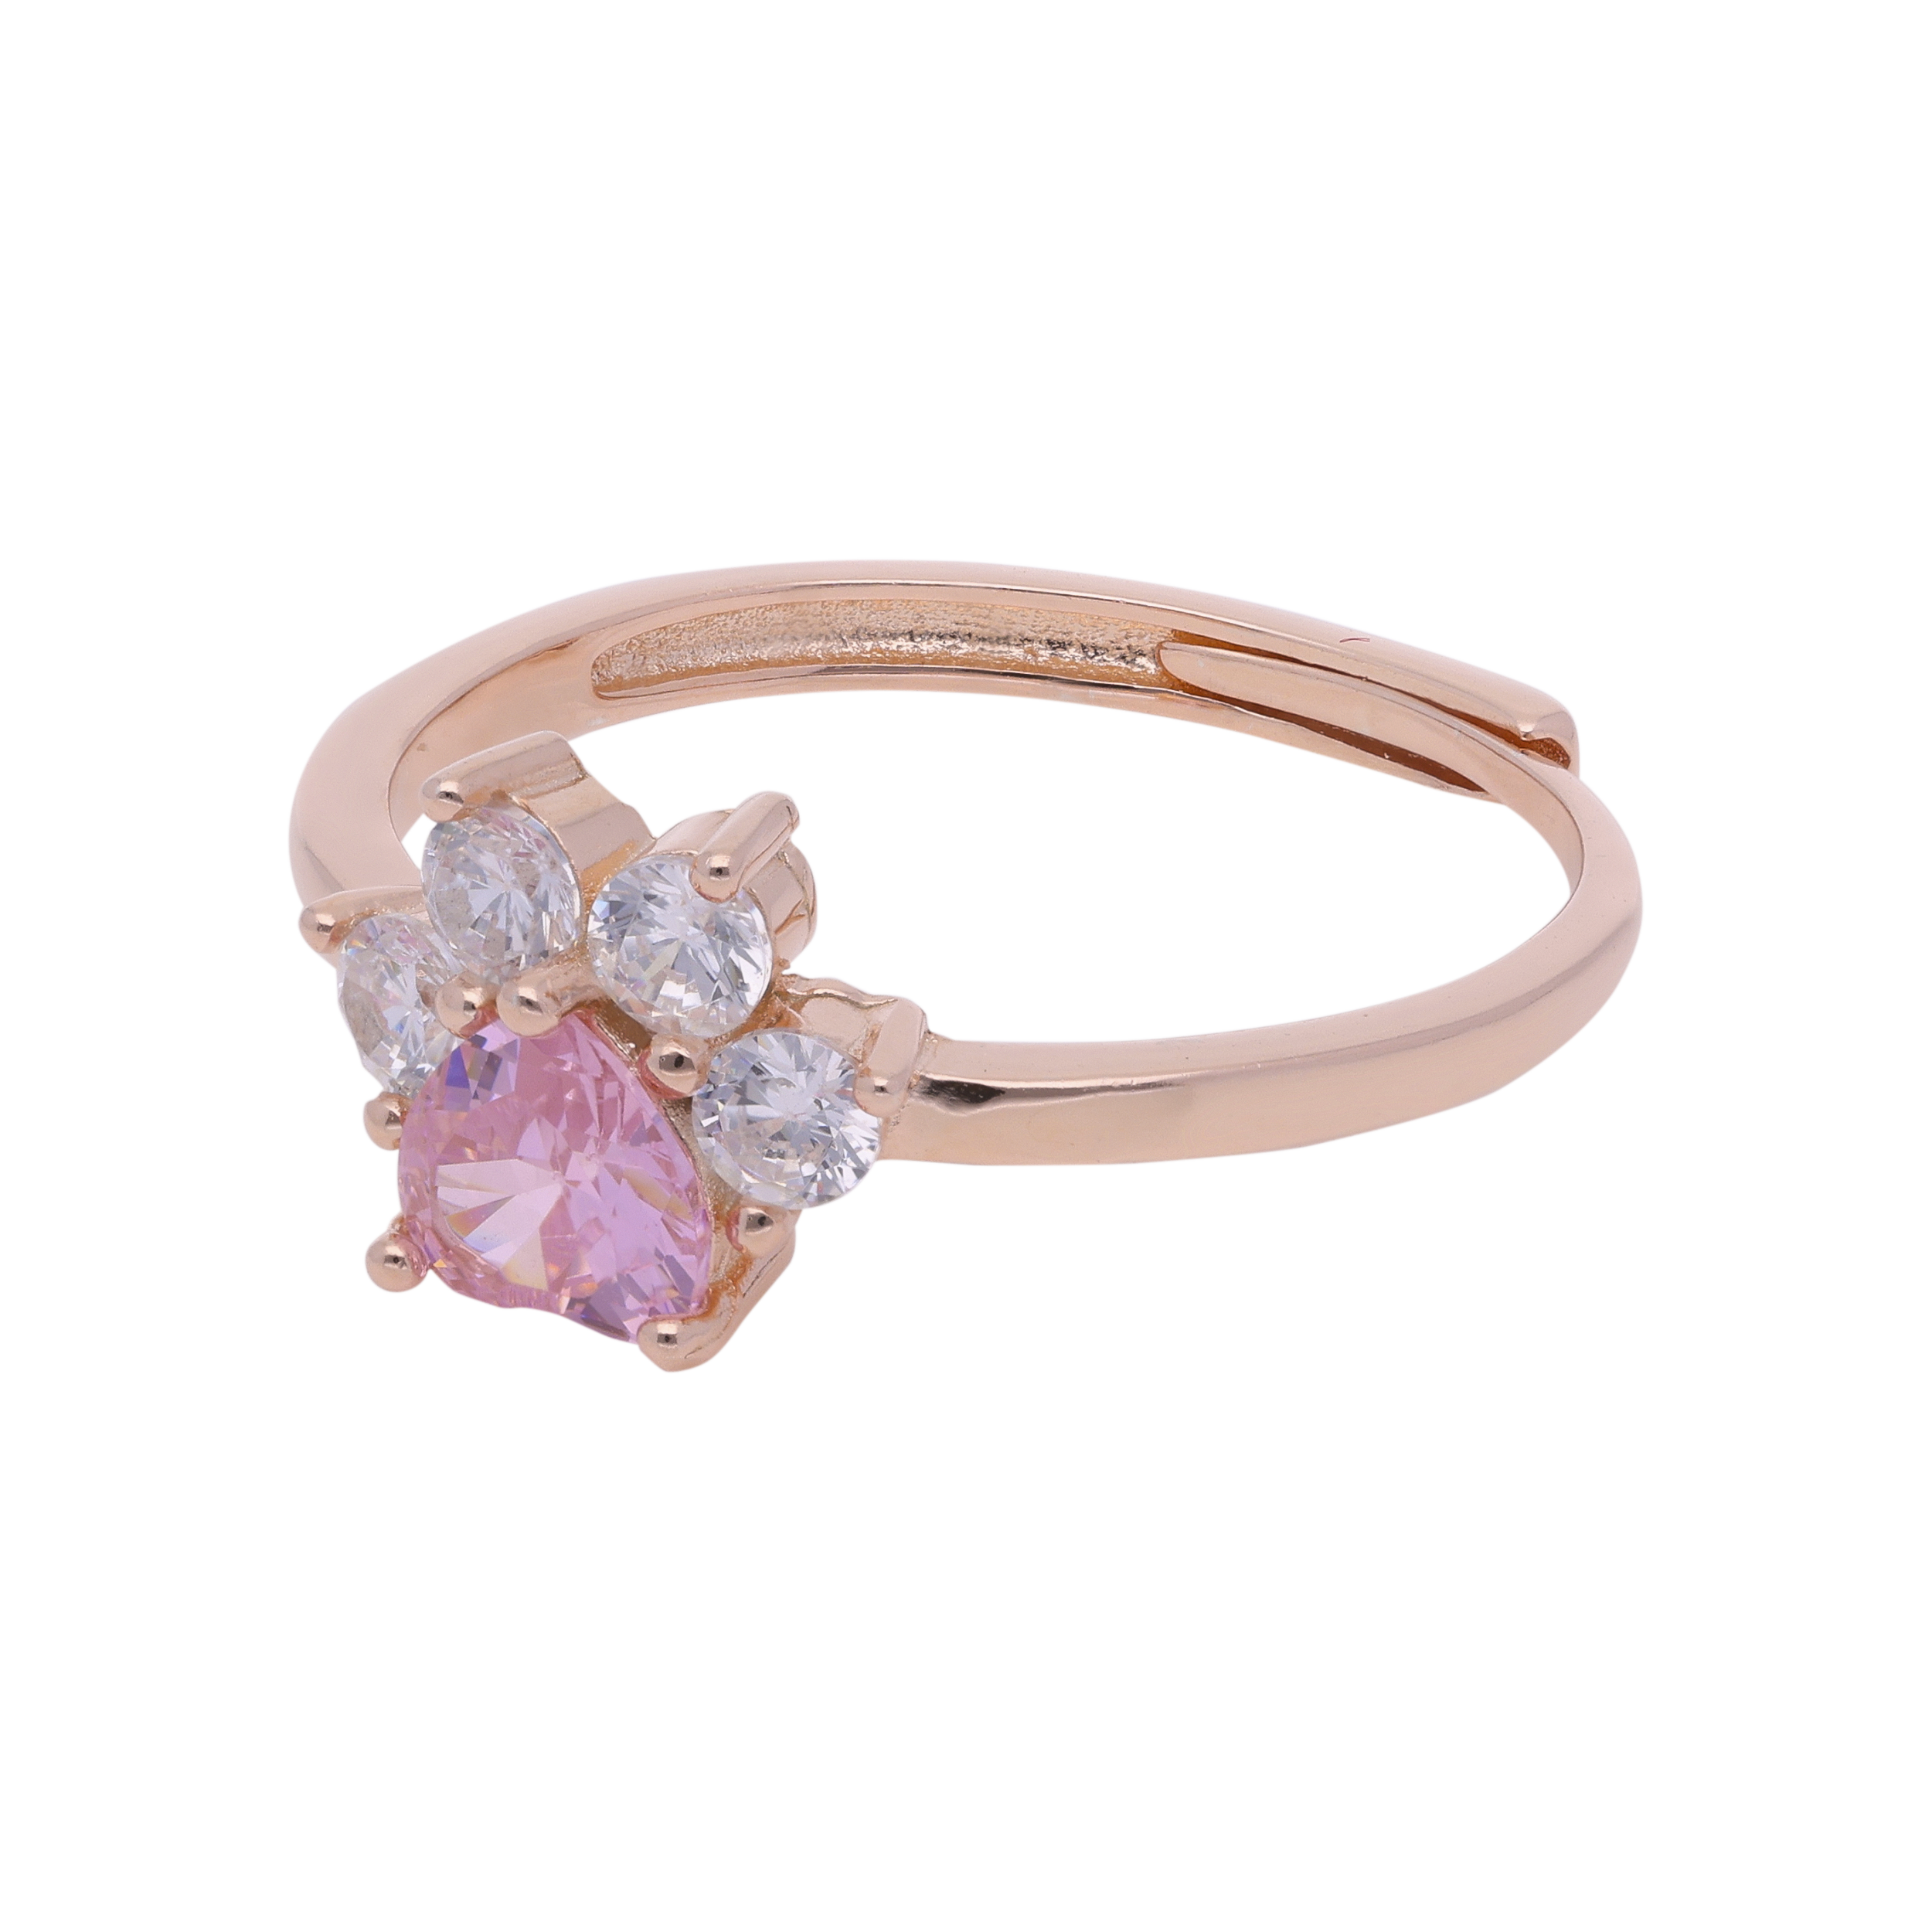 Pink Gem Radiance: Sterling Silver Band Ring | SKU : 0019890708, 0019890746